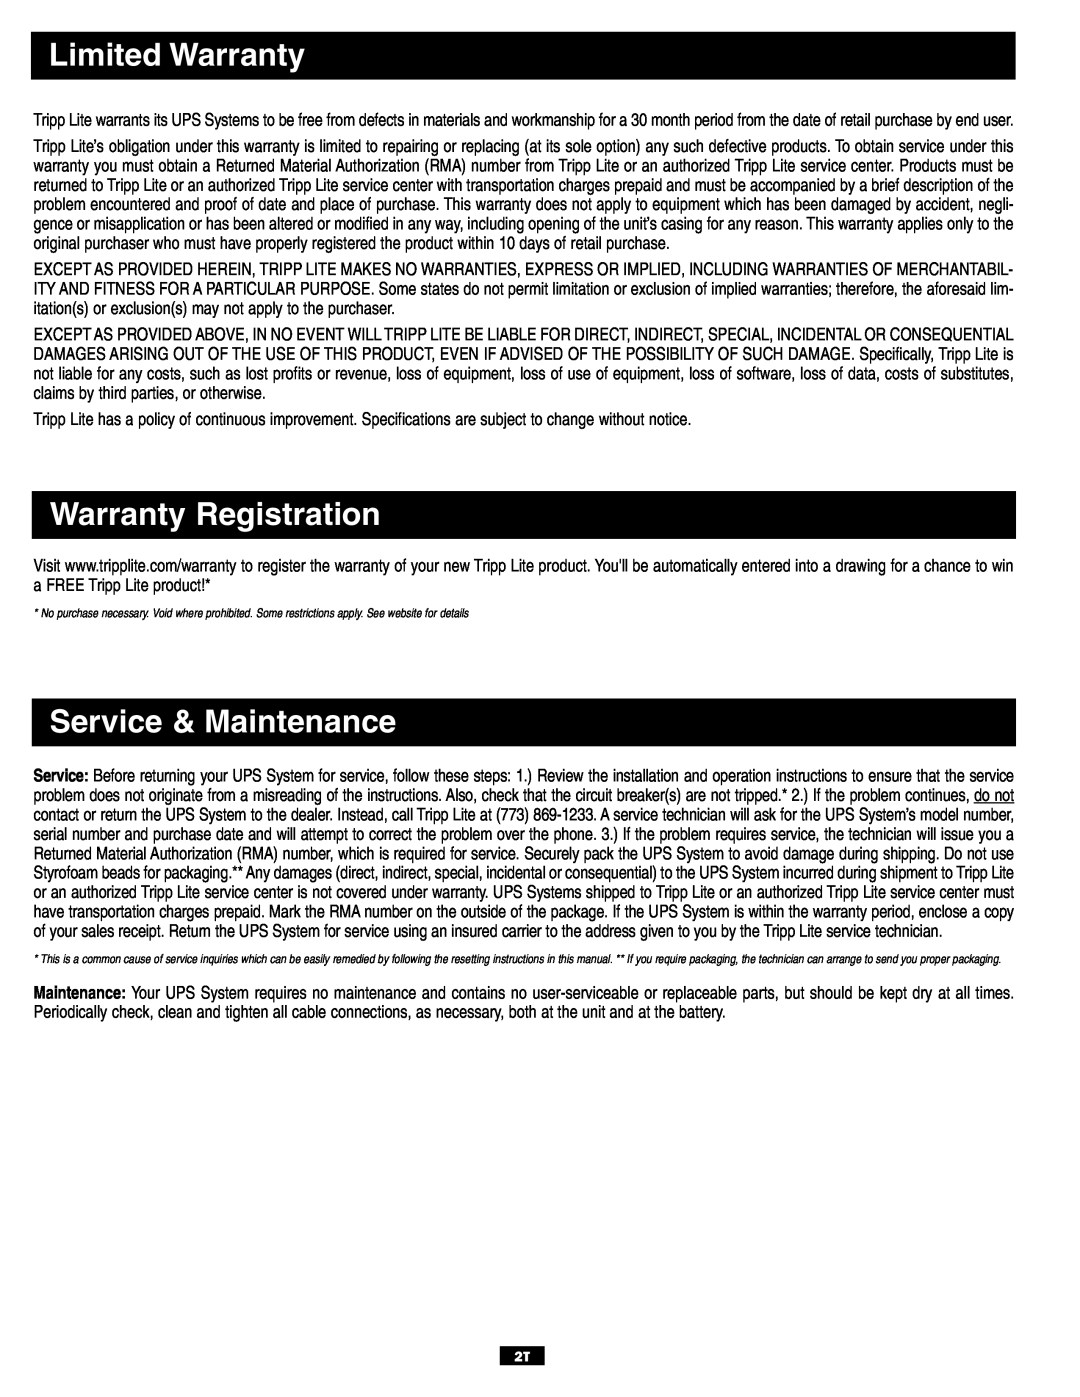 Tripp Lite TMU Series owner manual Limited Warranty, Warranty Registration, Service & Maintenance 